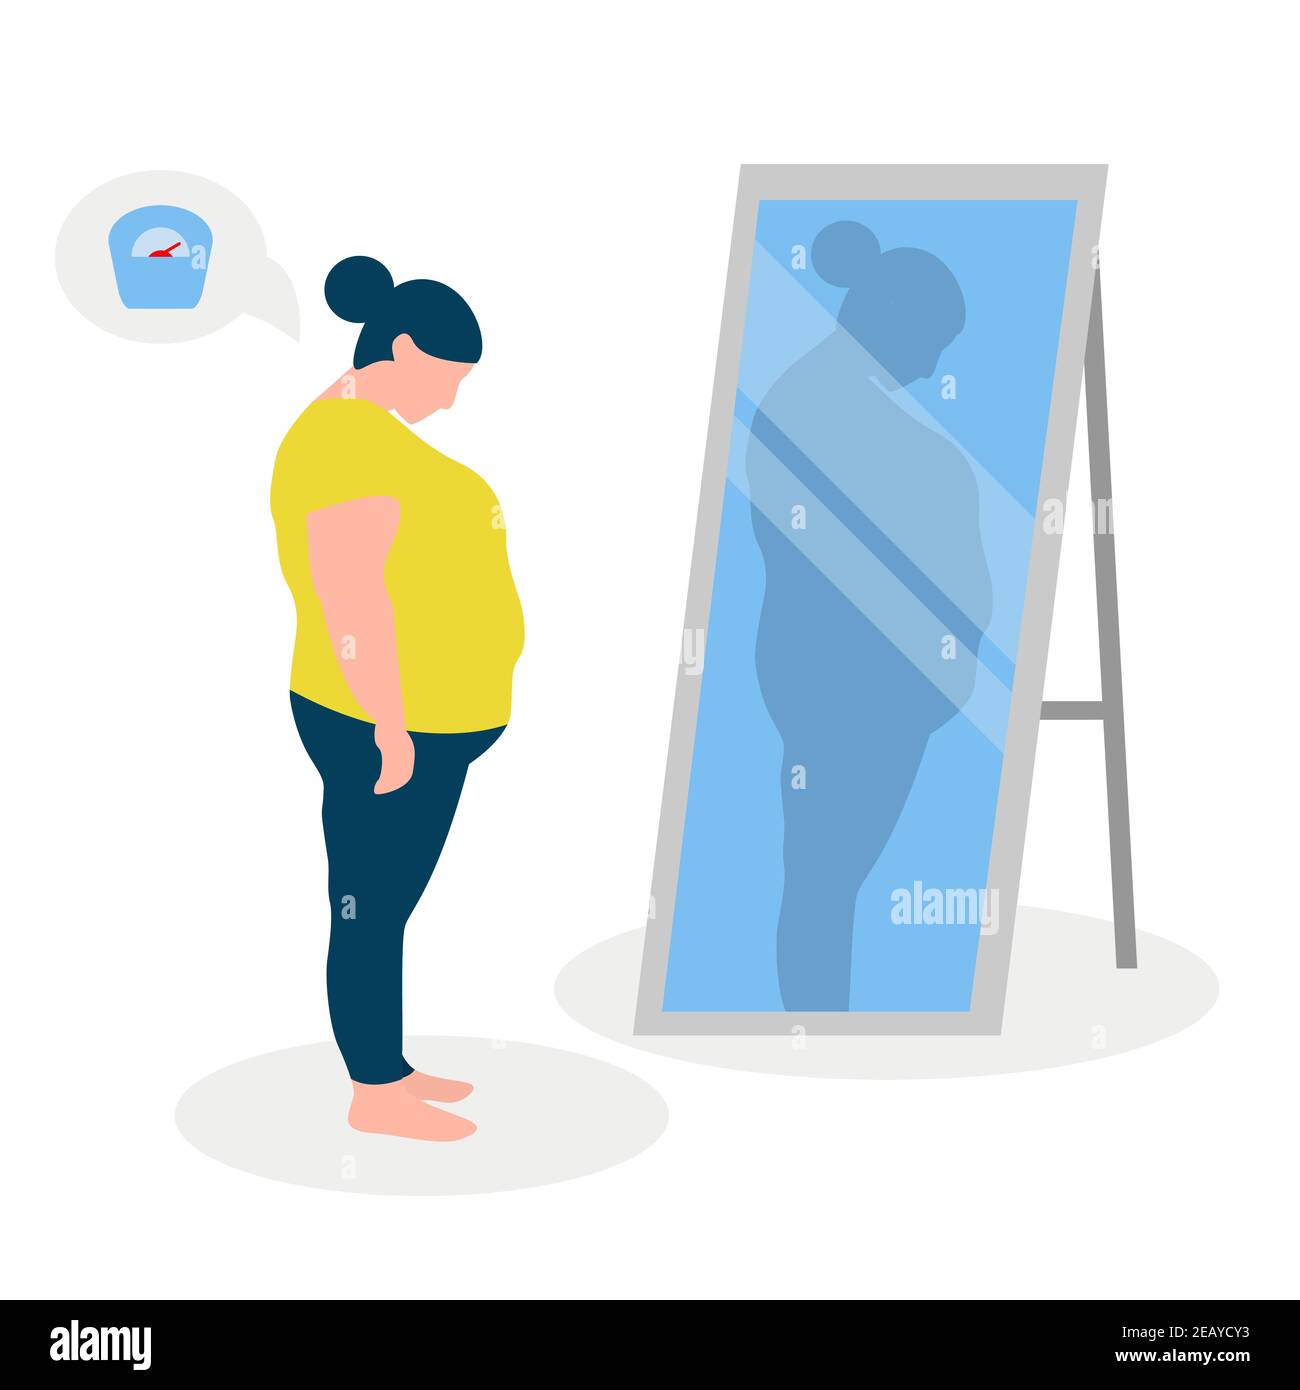 Immagine vettoriale piatta di una ragazza grassa con bassa autostima in piedi davanti ad uno specchio. La ragazza guarda nel suo riflesso distorto. Illustrazione Vettoriale